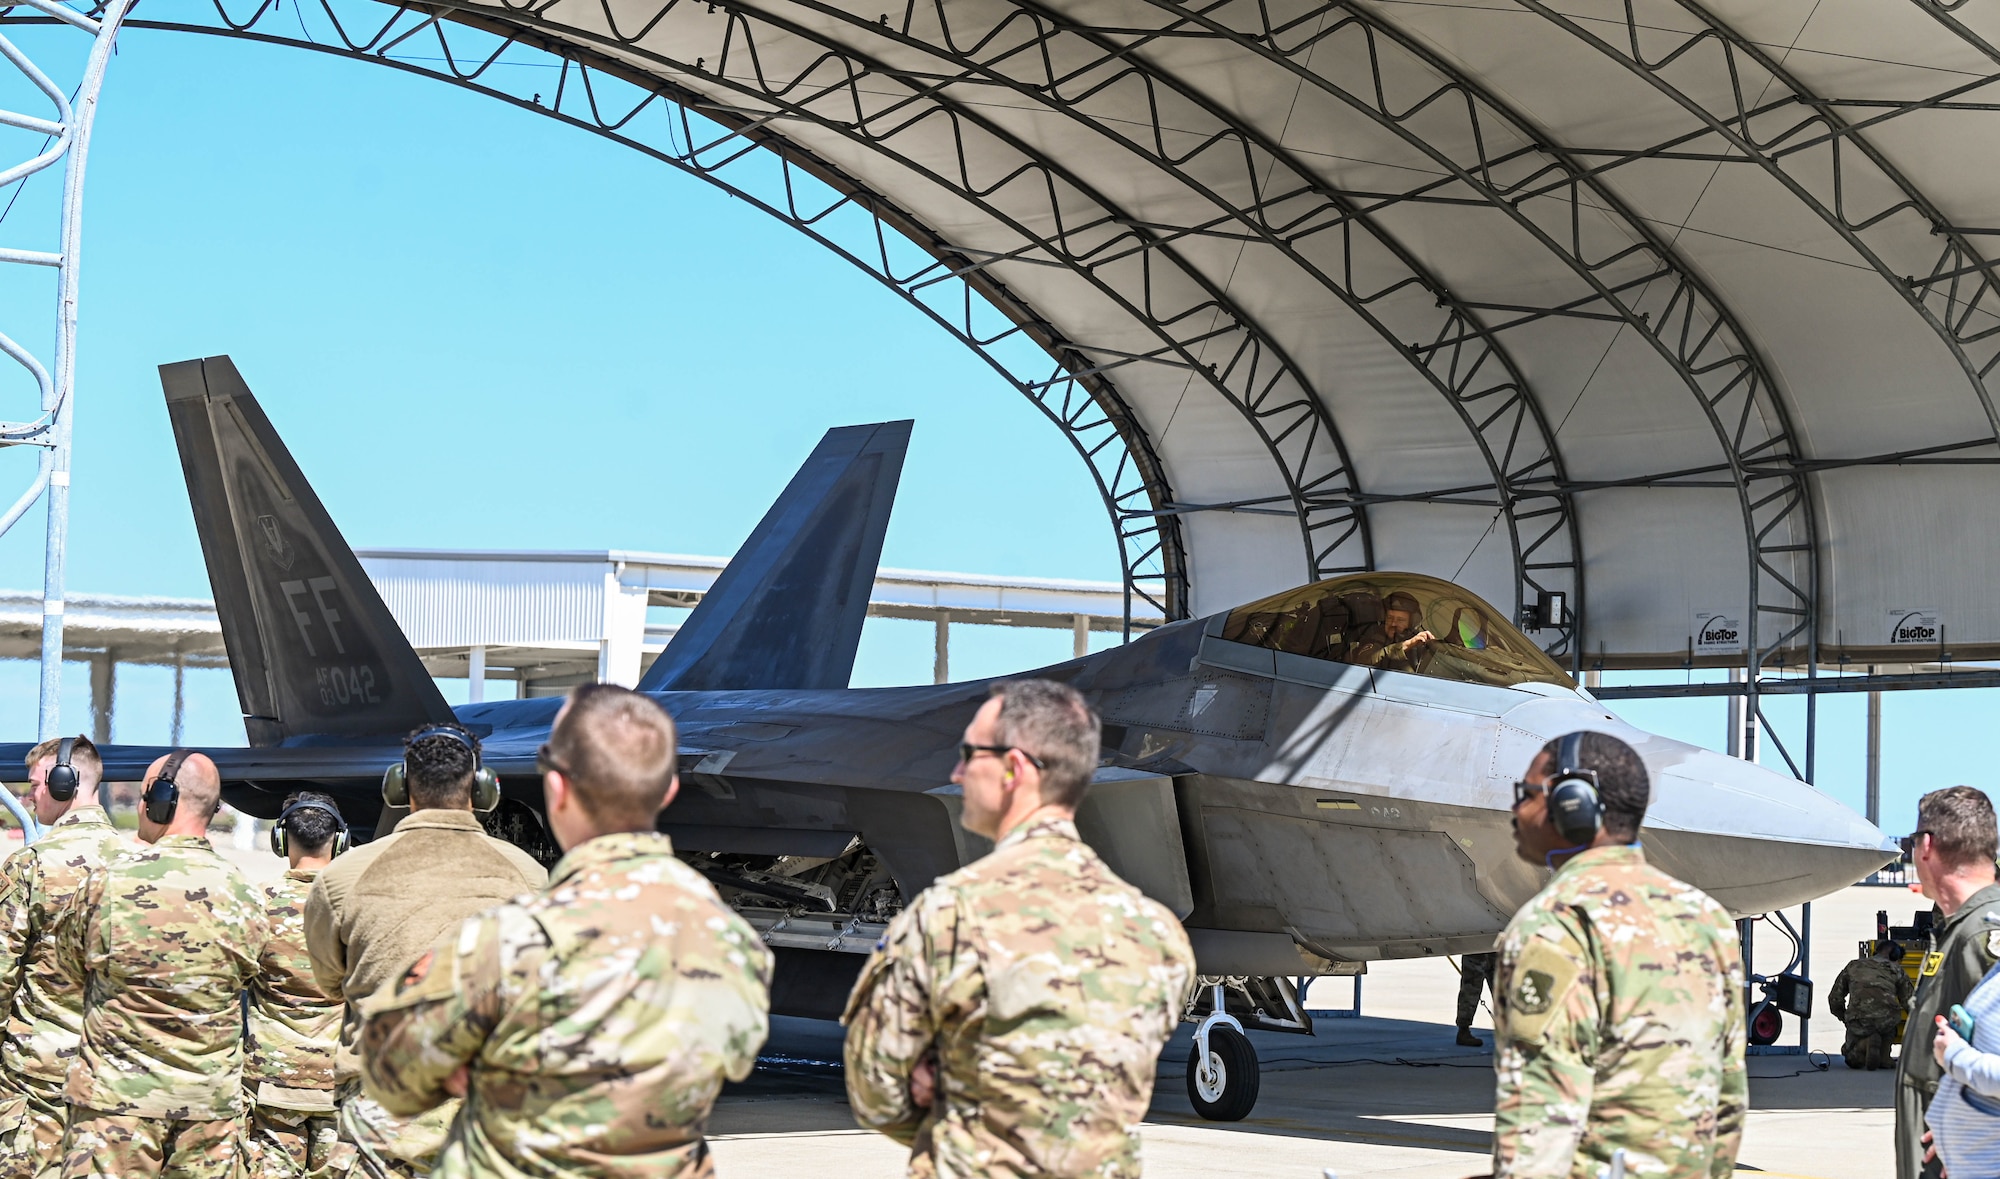 Lt. Col. Evers lands an F-22 Raptor beginning the FTU